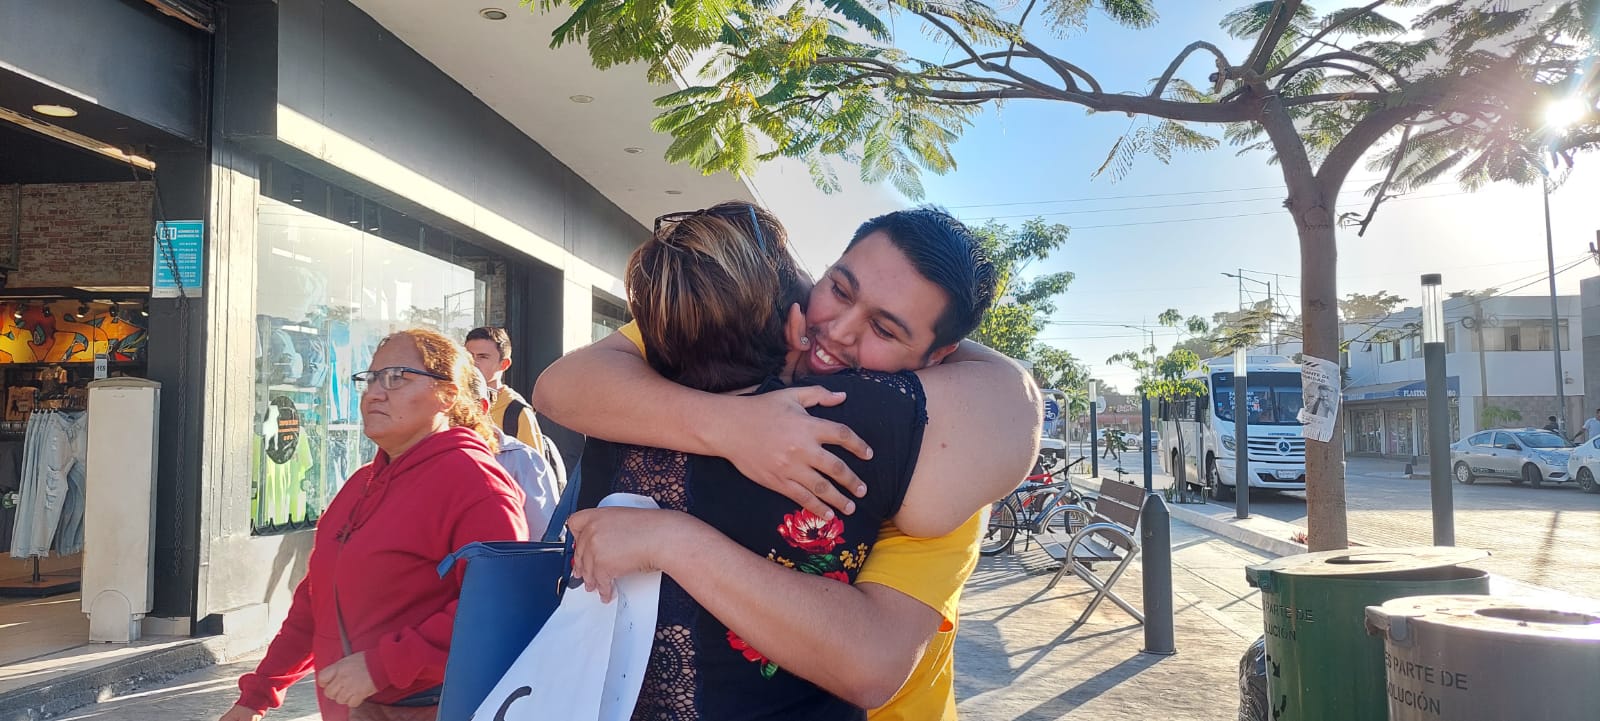 ¡Efusivos abrazos gratis! Multiplicaron sonrisas en el sector Centro de Los Mochis